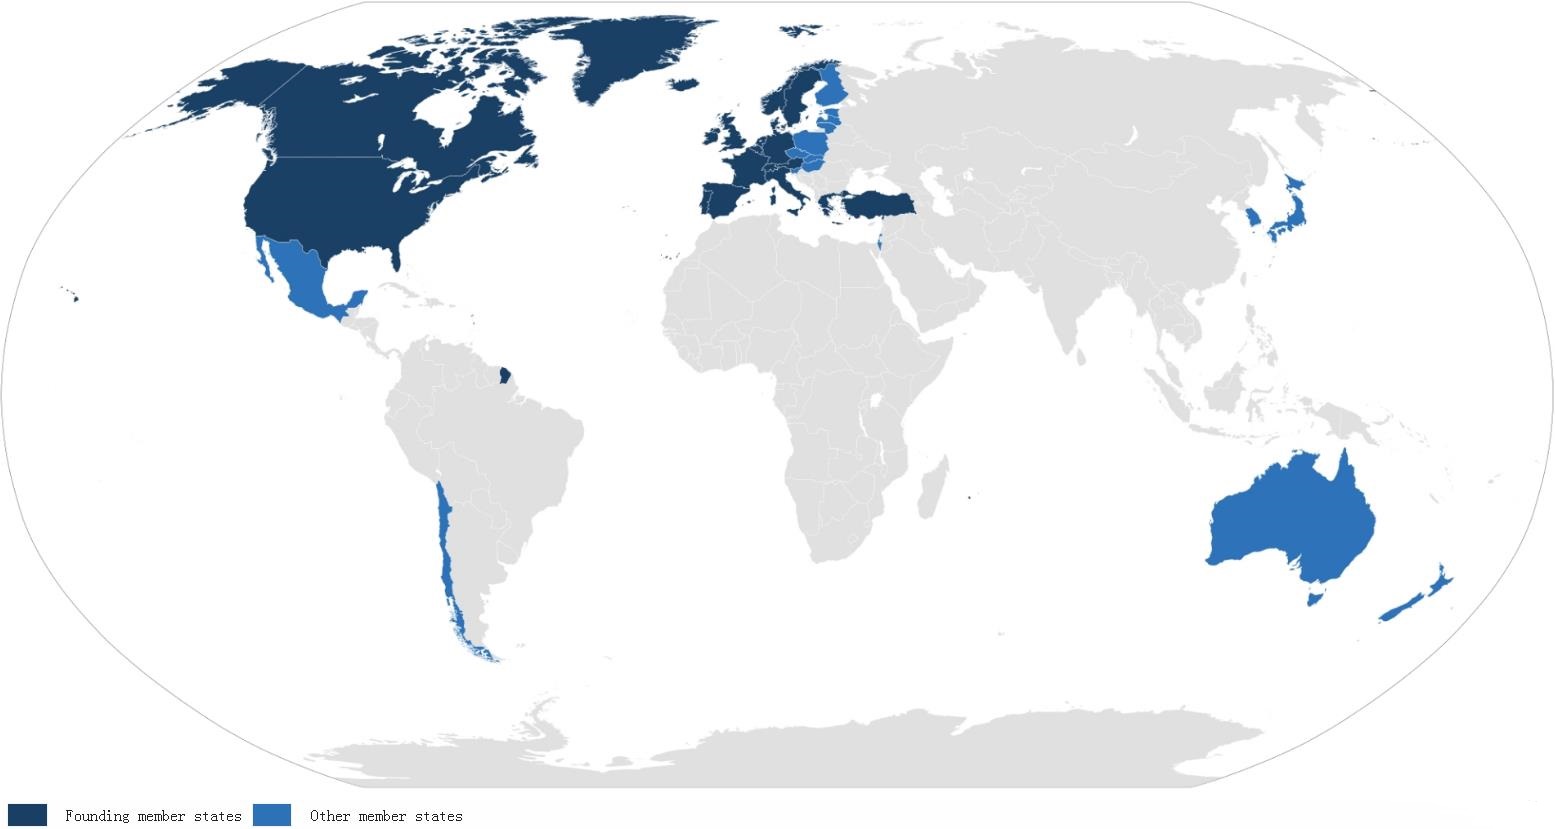 深藍色為創始成員國，淺藍色為後加入的成員國